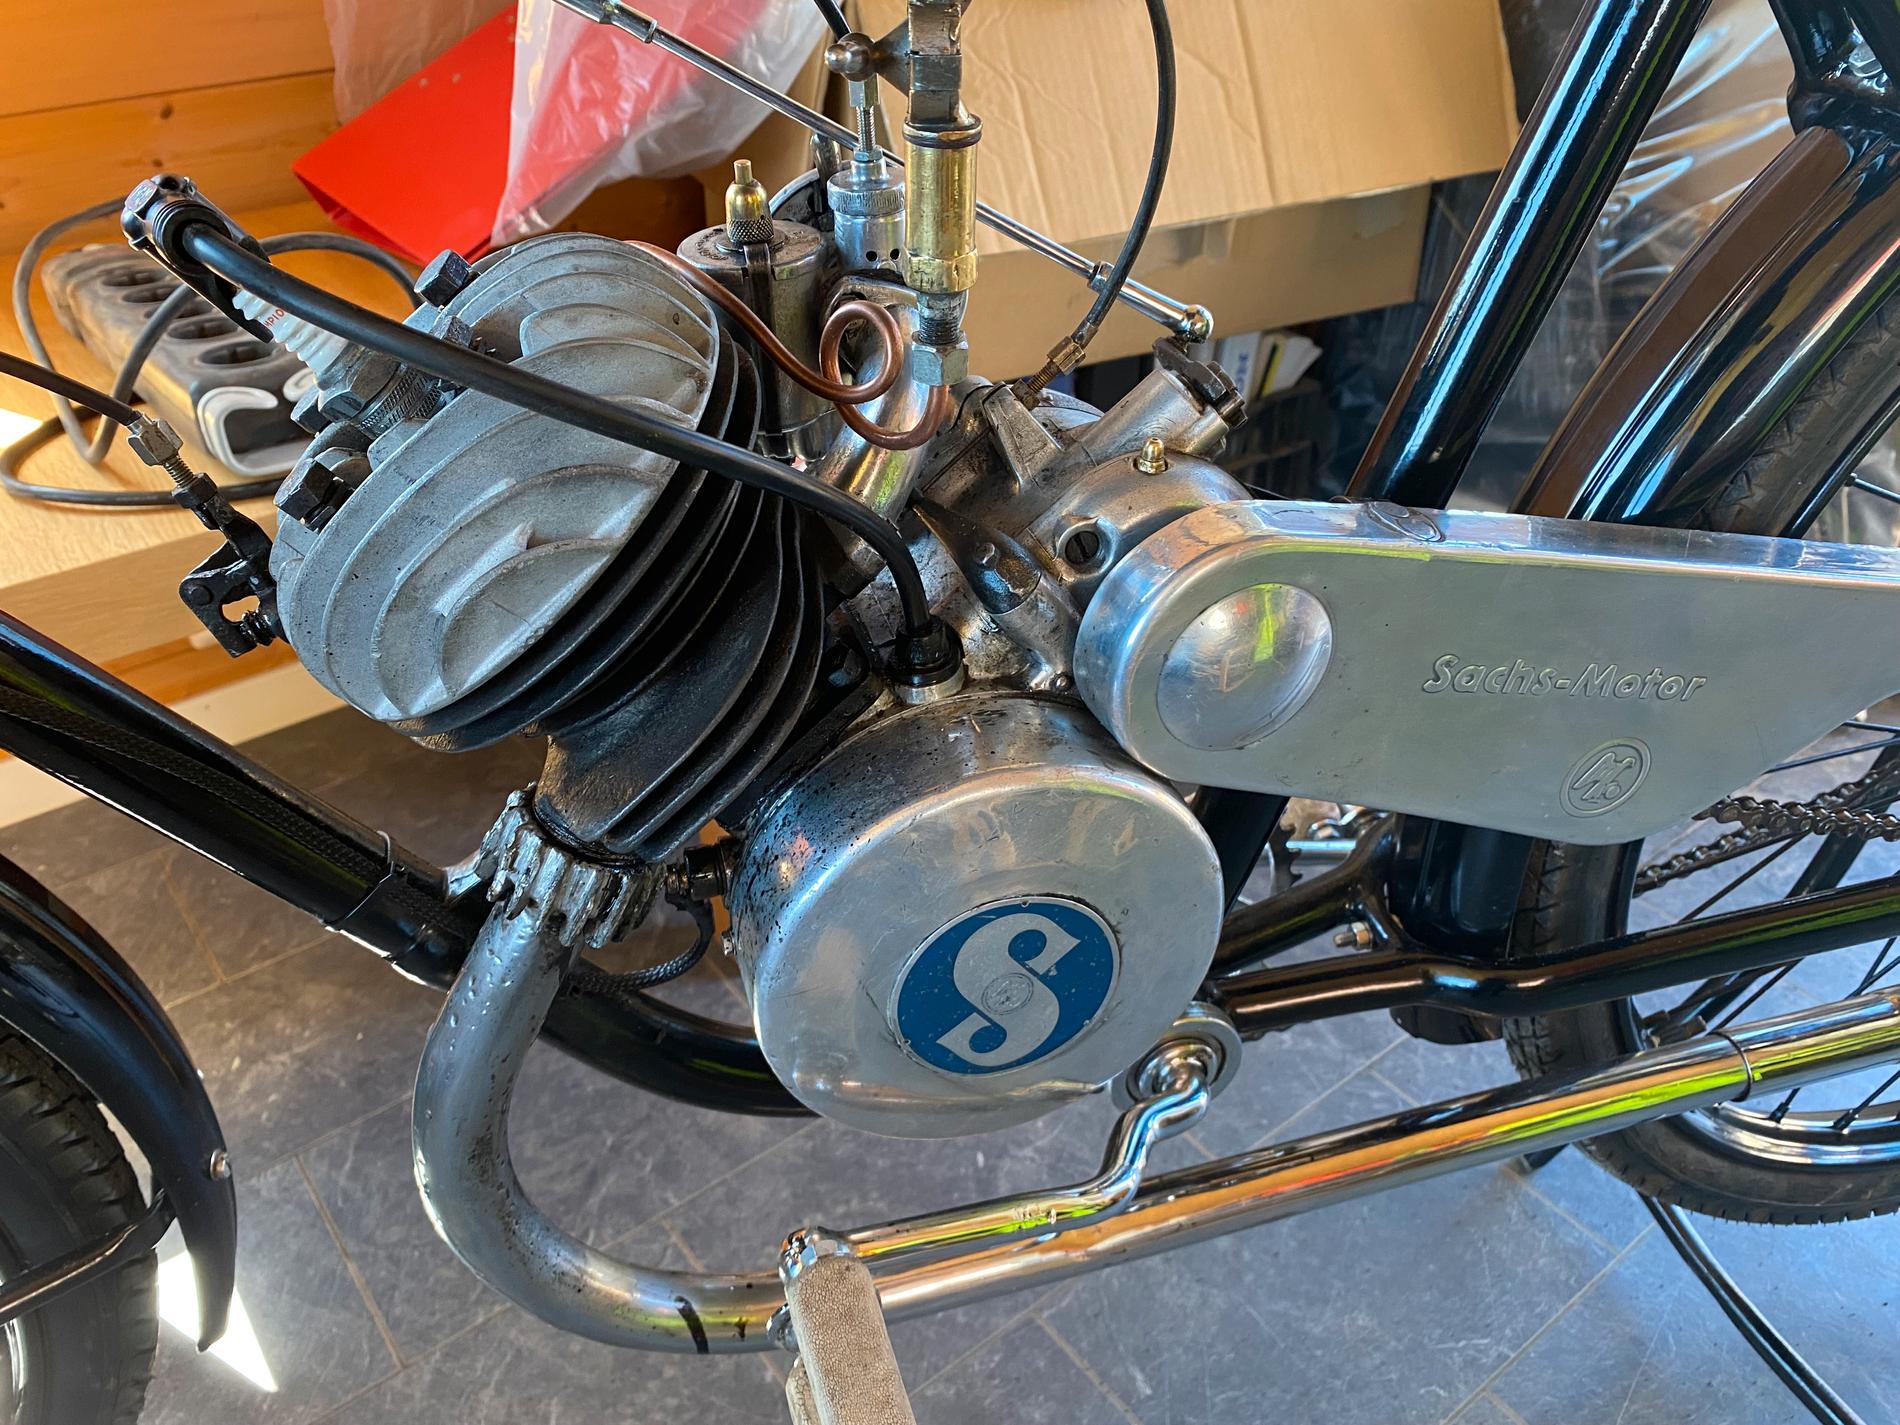 Sachs-motor, 98 kubikk. Difor må sykkelen reknast som ein motorsykkel, og ikkje ein moped.